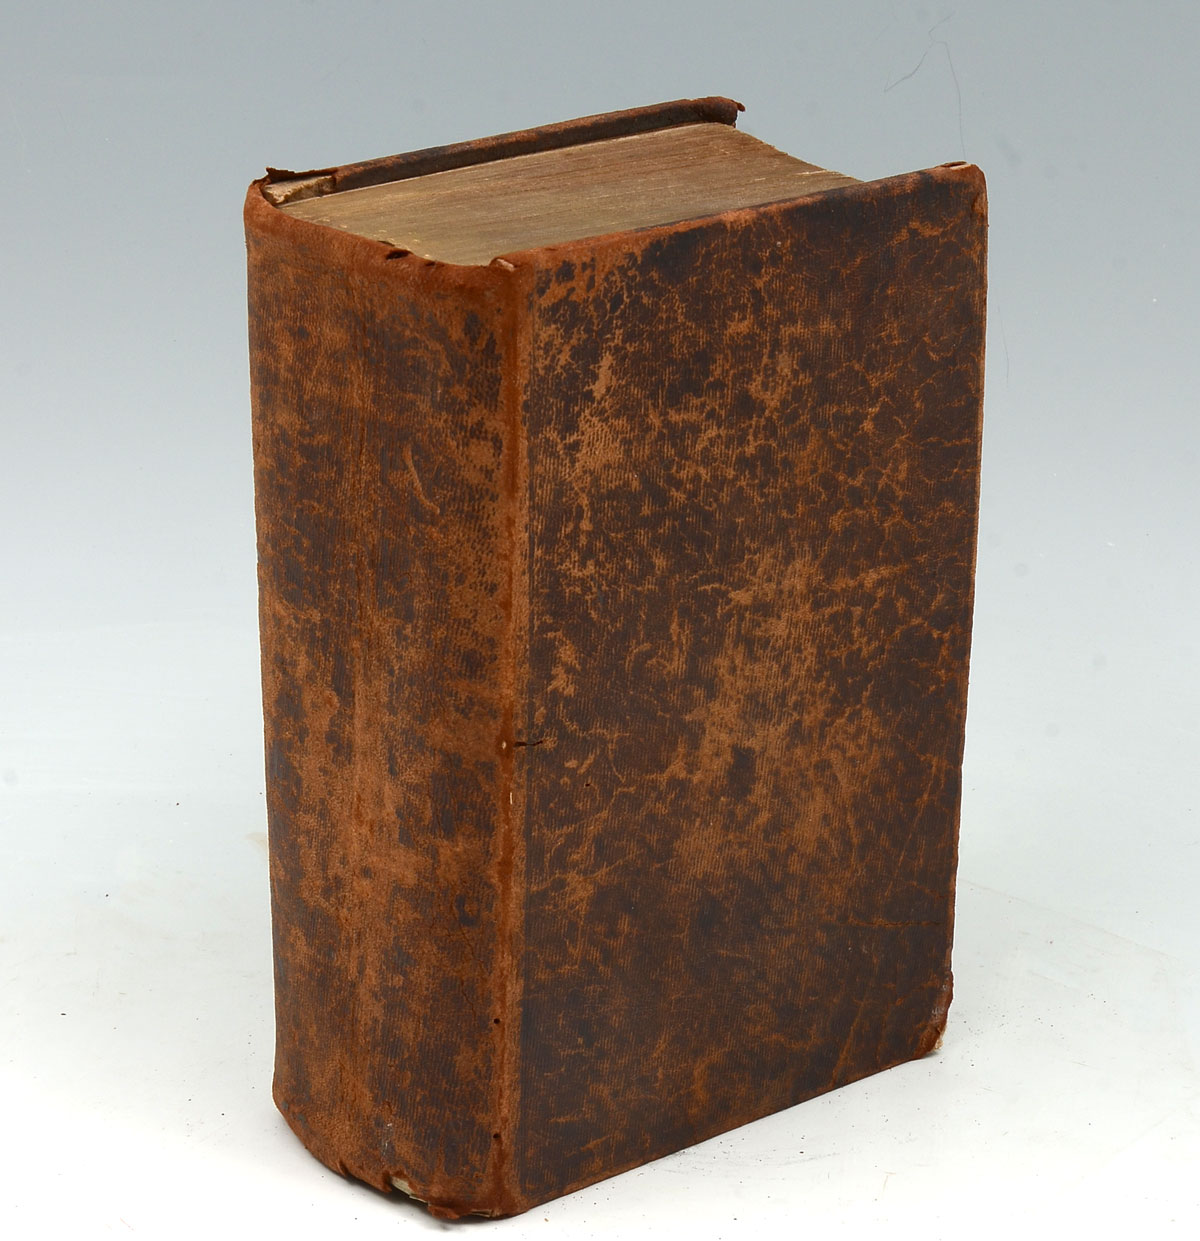 1815 GERMAN BIBLE: German Bible, having